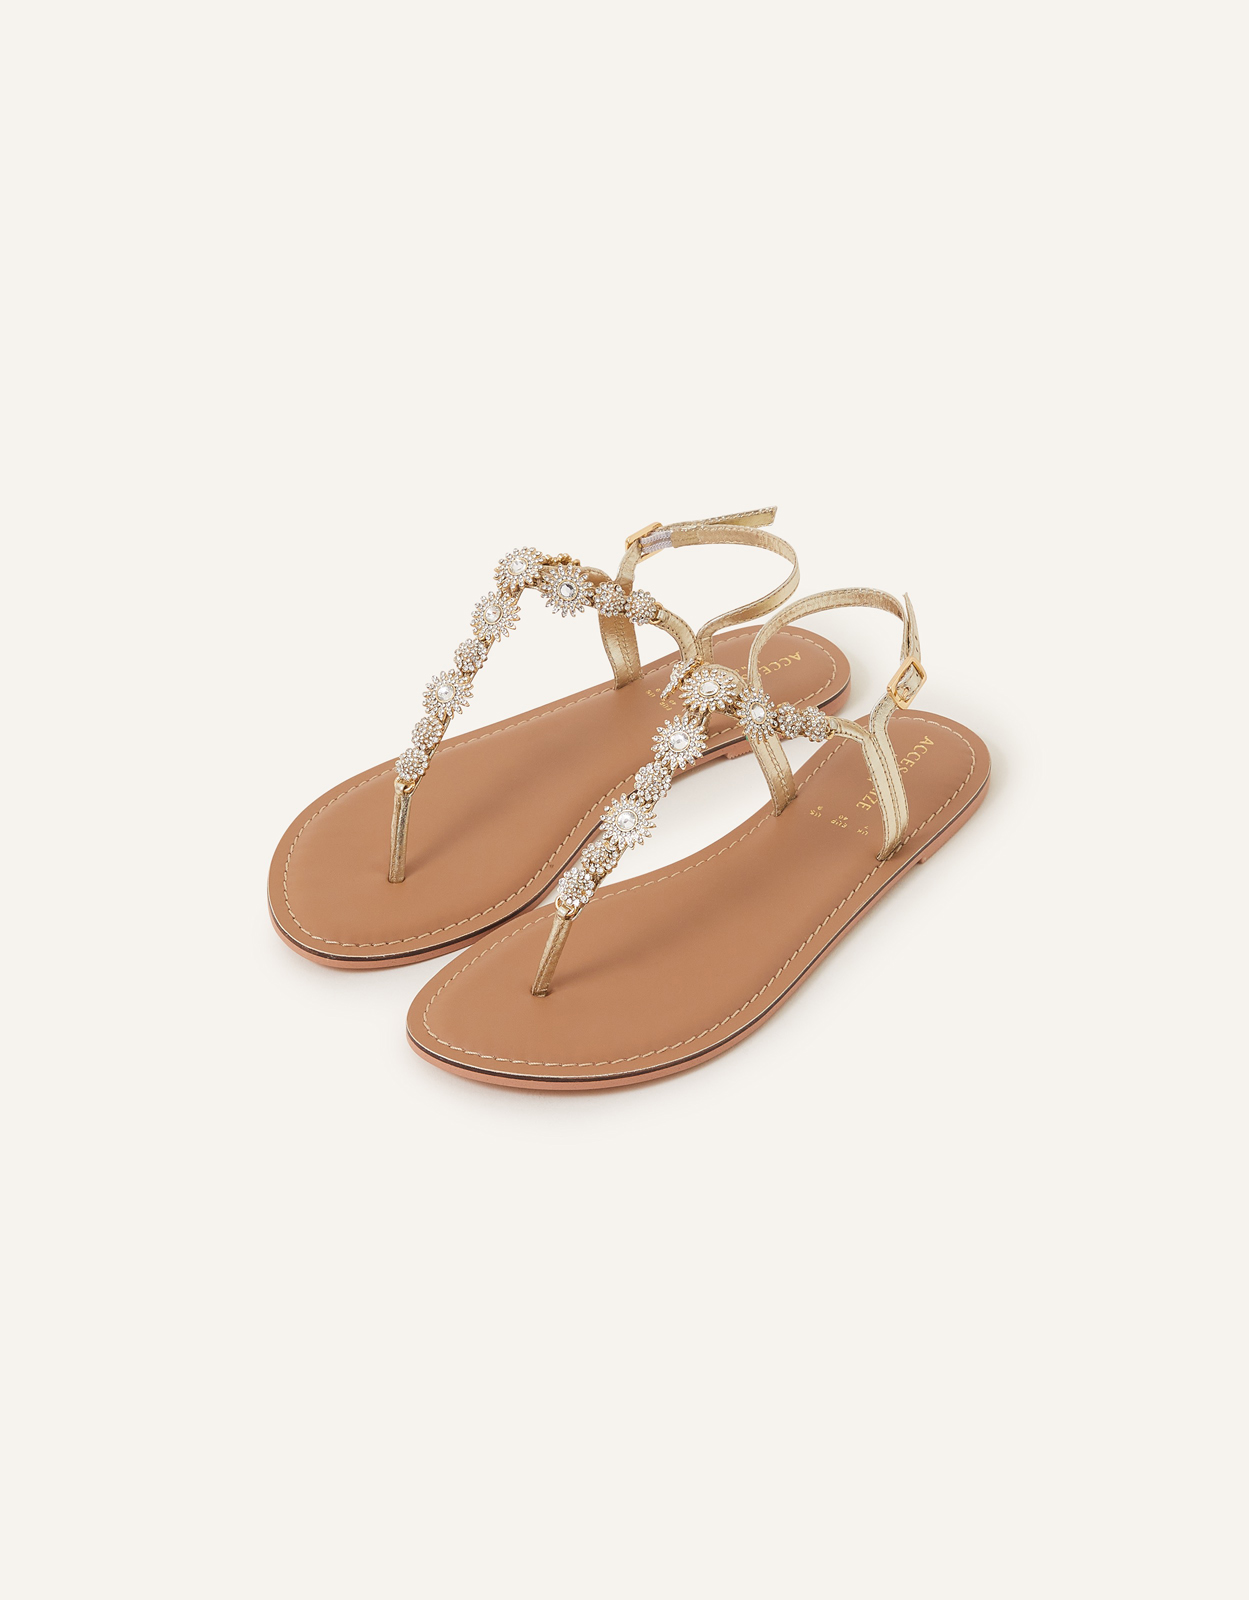 Accessorize Women's White Rome Sparkle Sandals, Size: 40